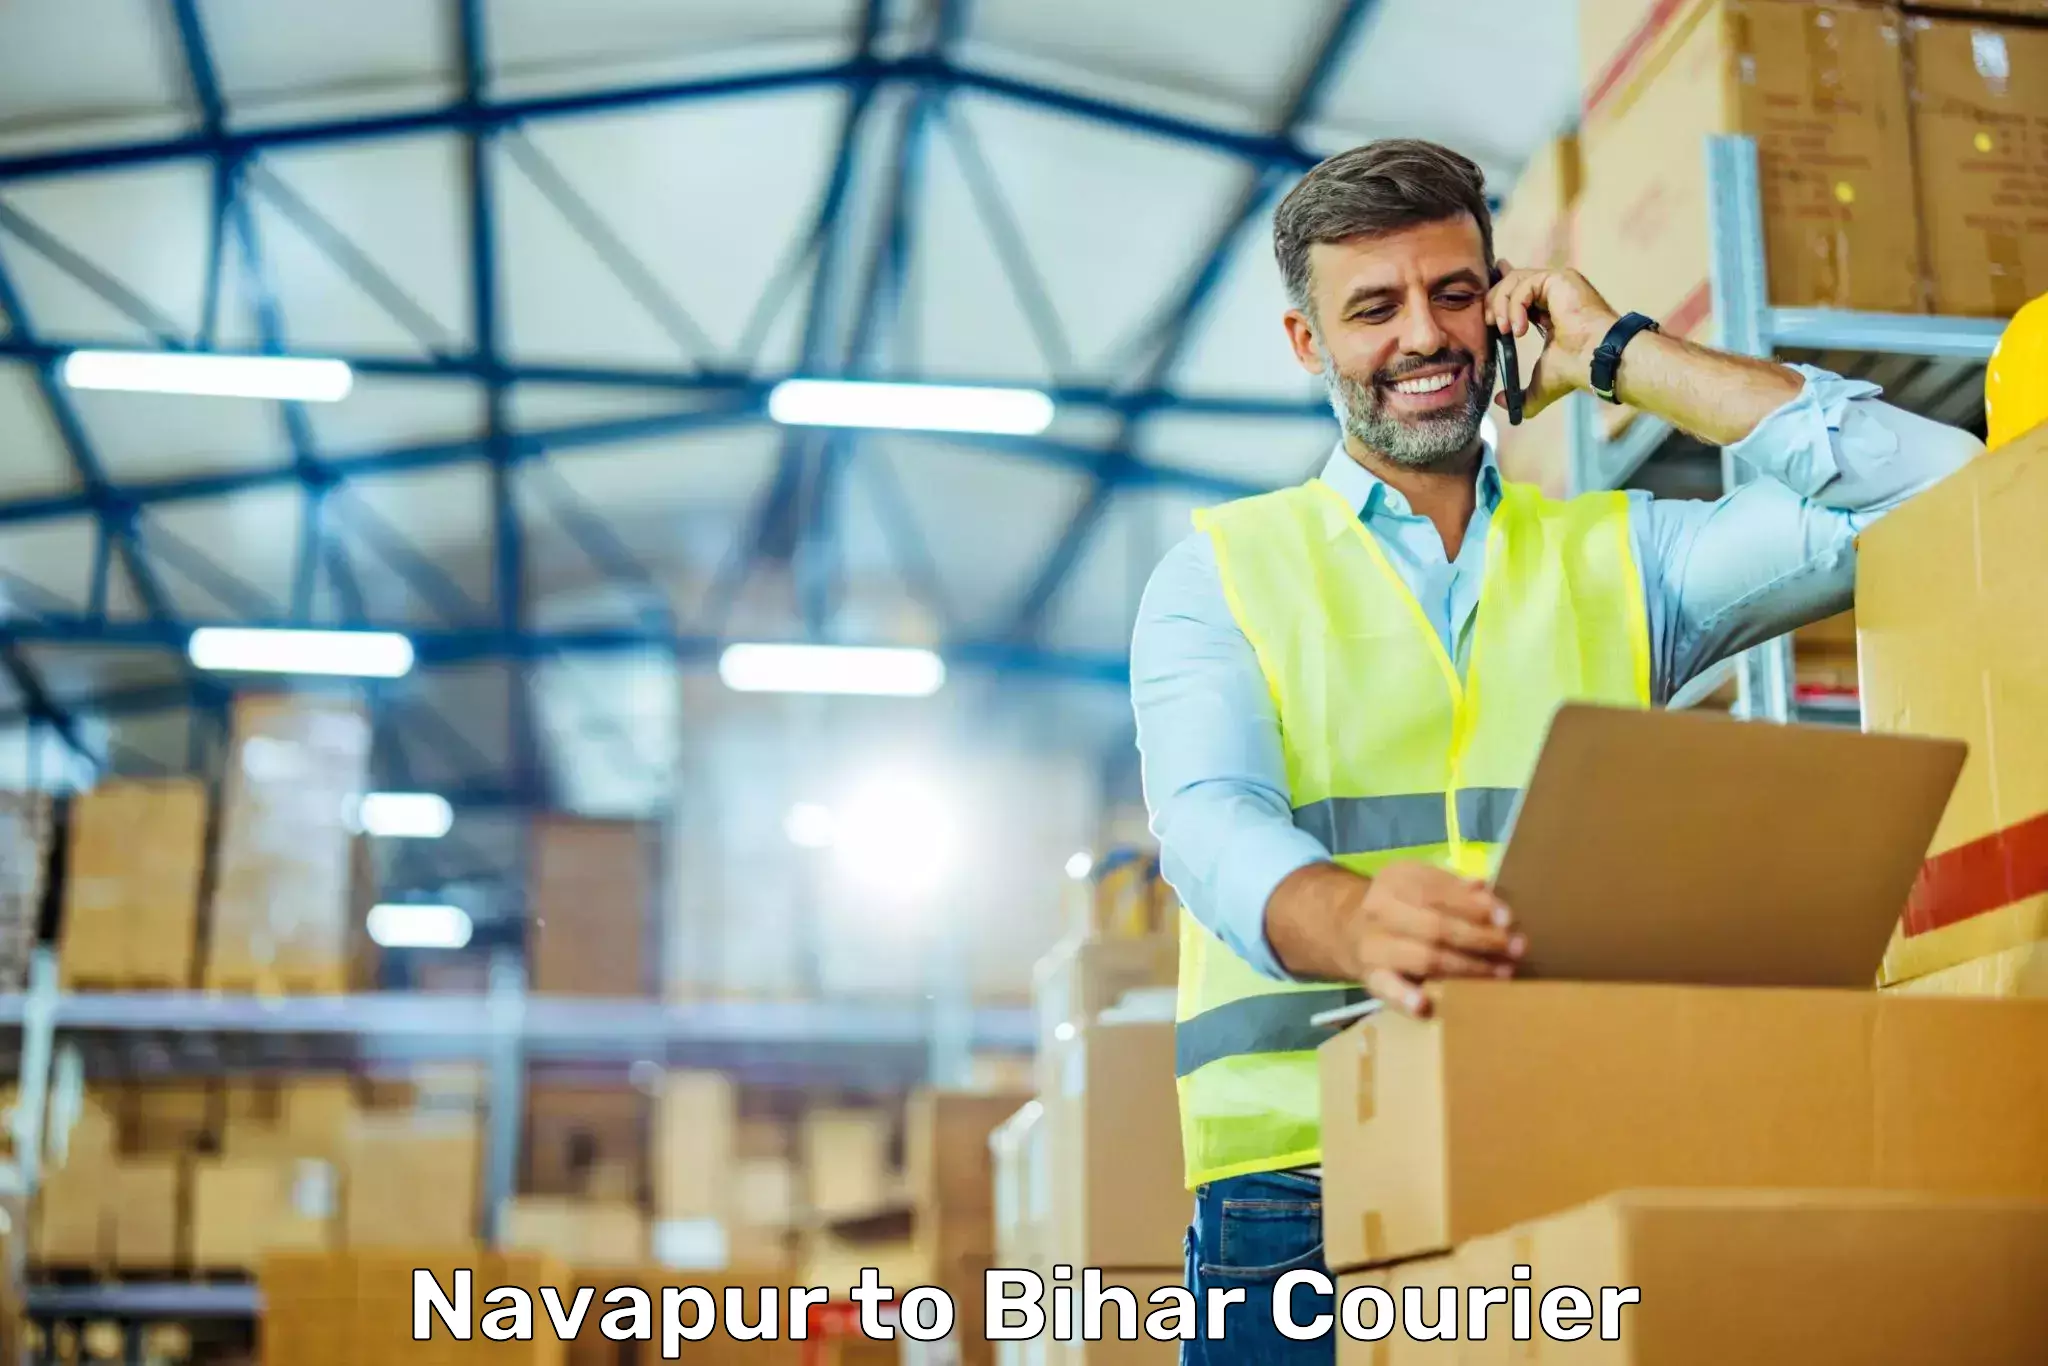 Courier service efficiency Navapur to Aurangabad Bihar